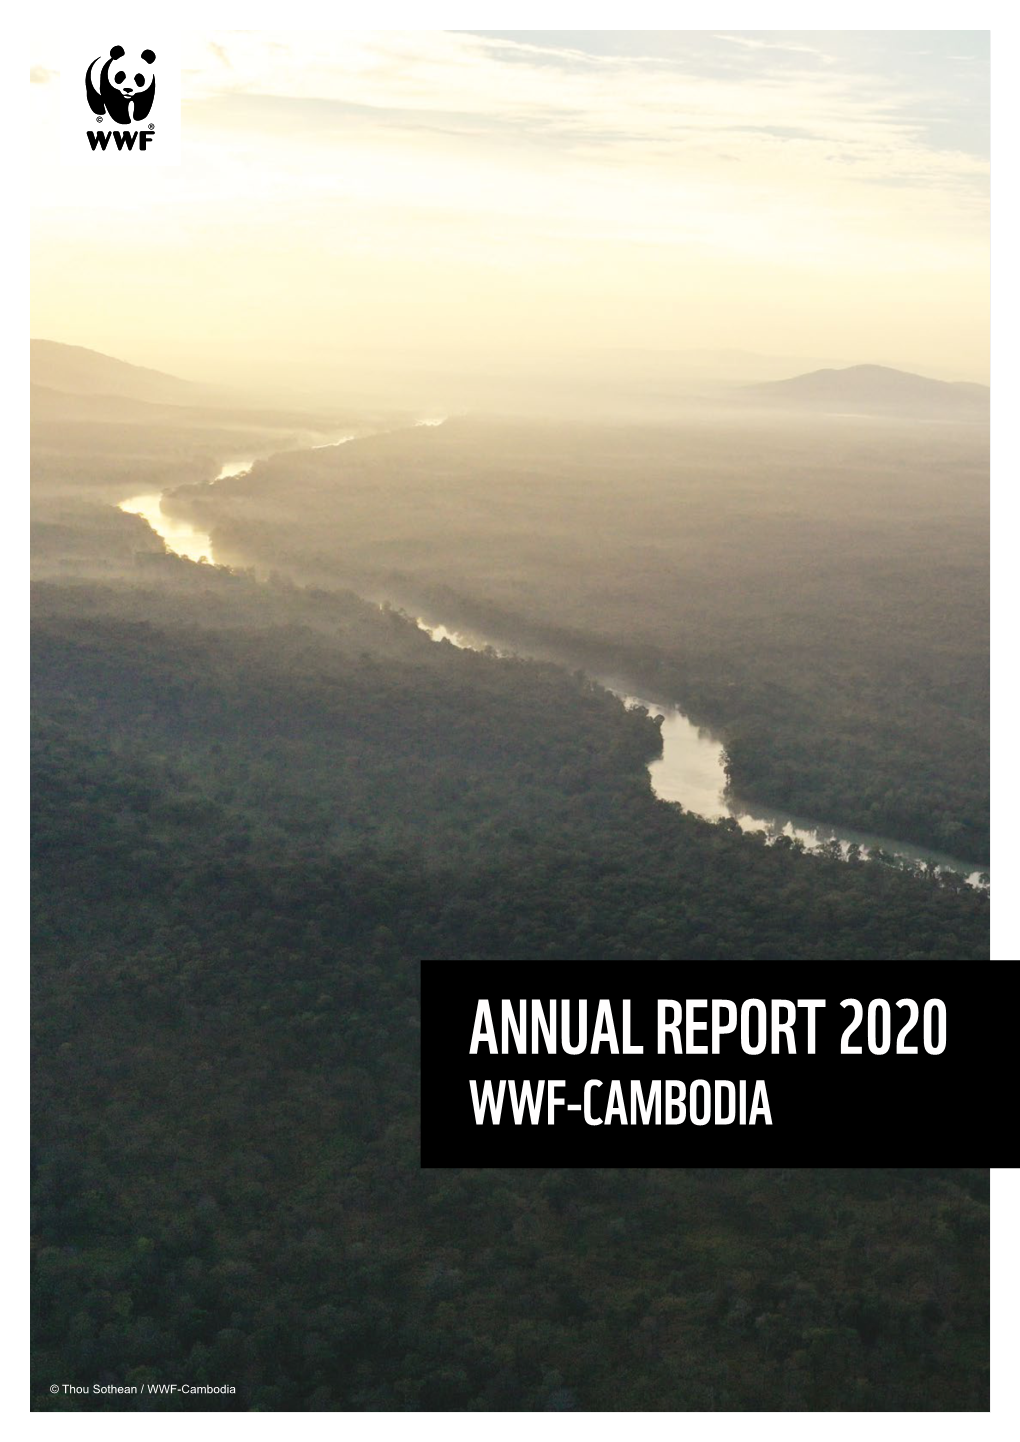 Annual Report 2020 Wwf-Cambodia